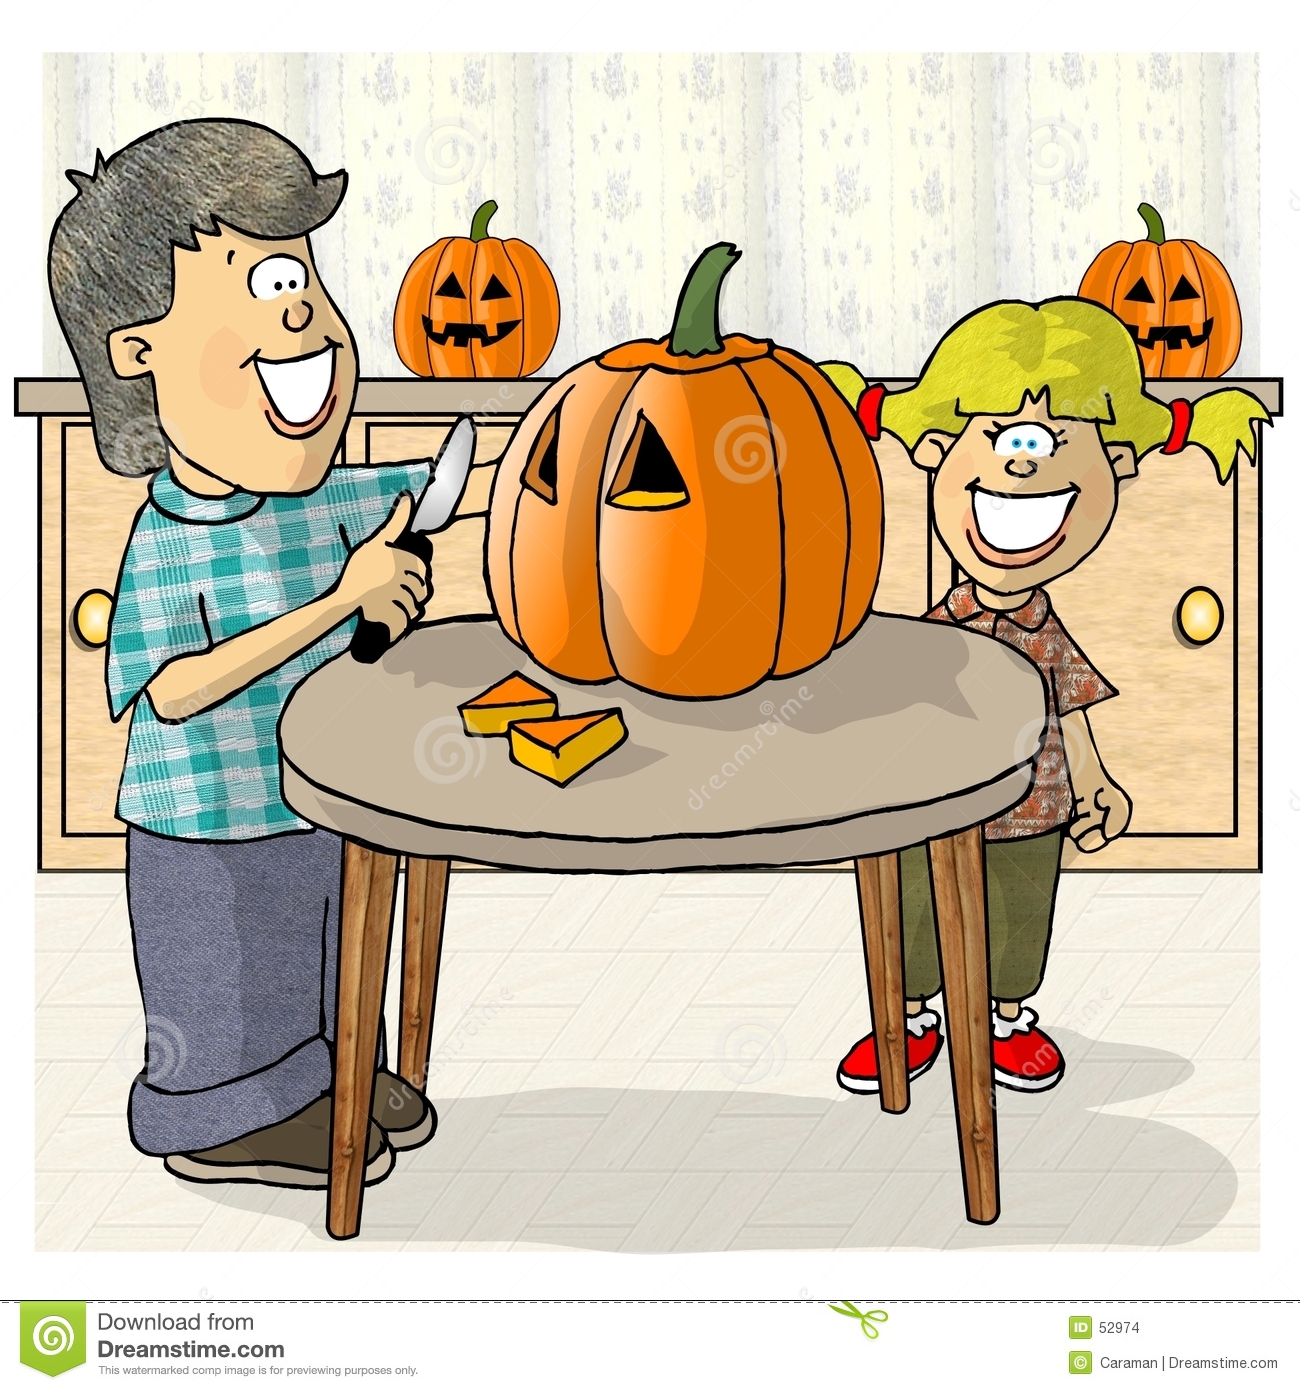 Carving pumpkins - Pumpkin Carving Clipart